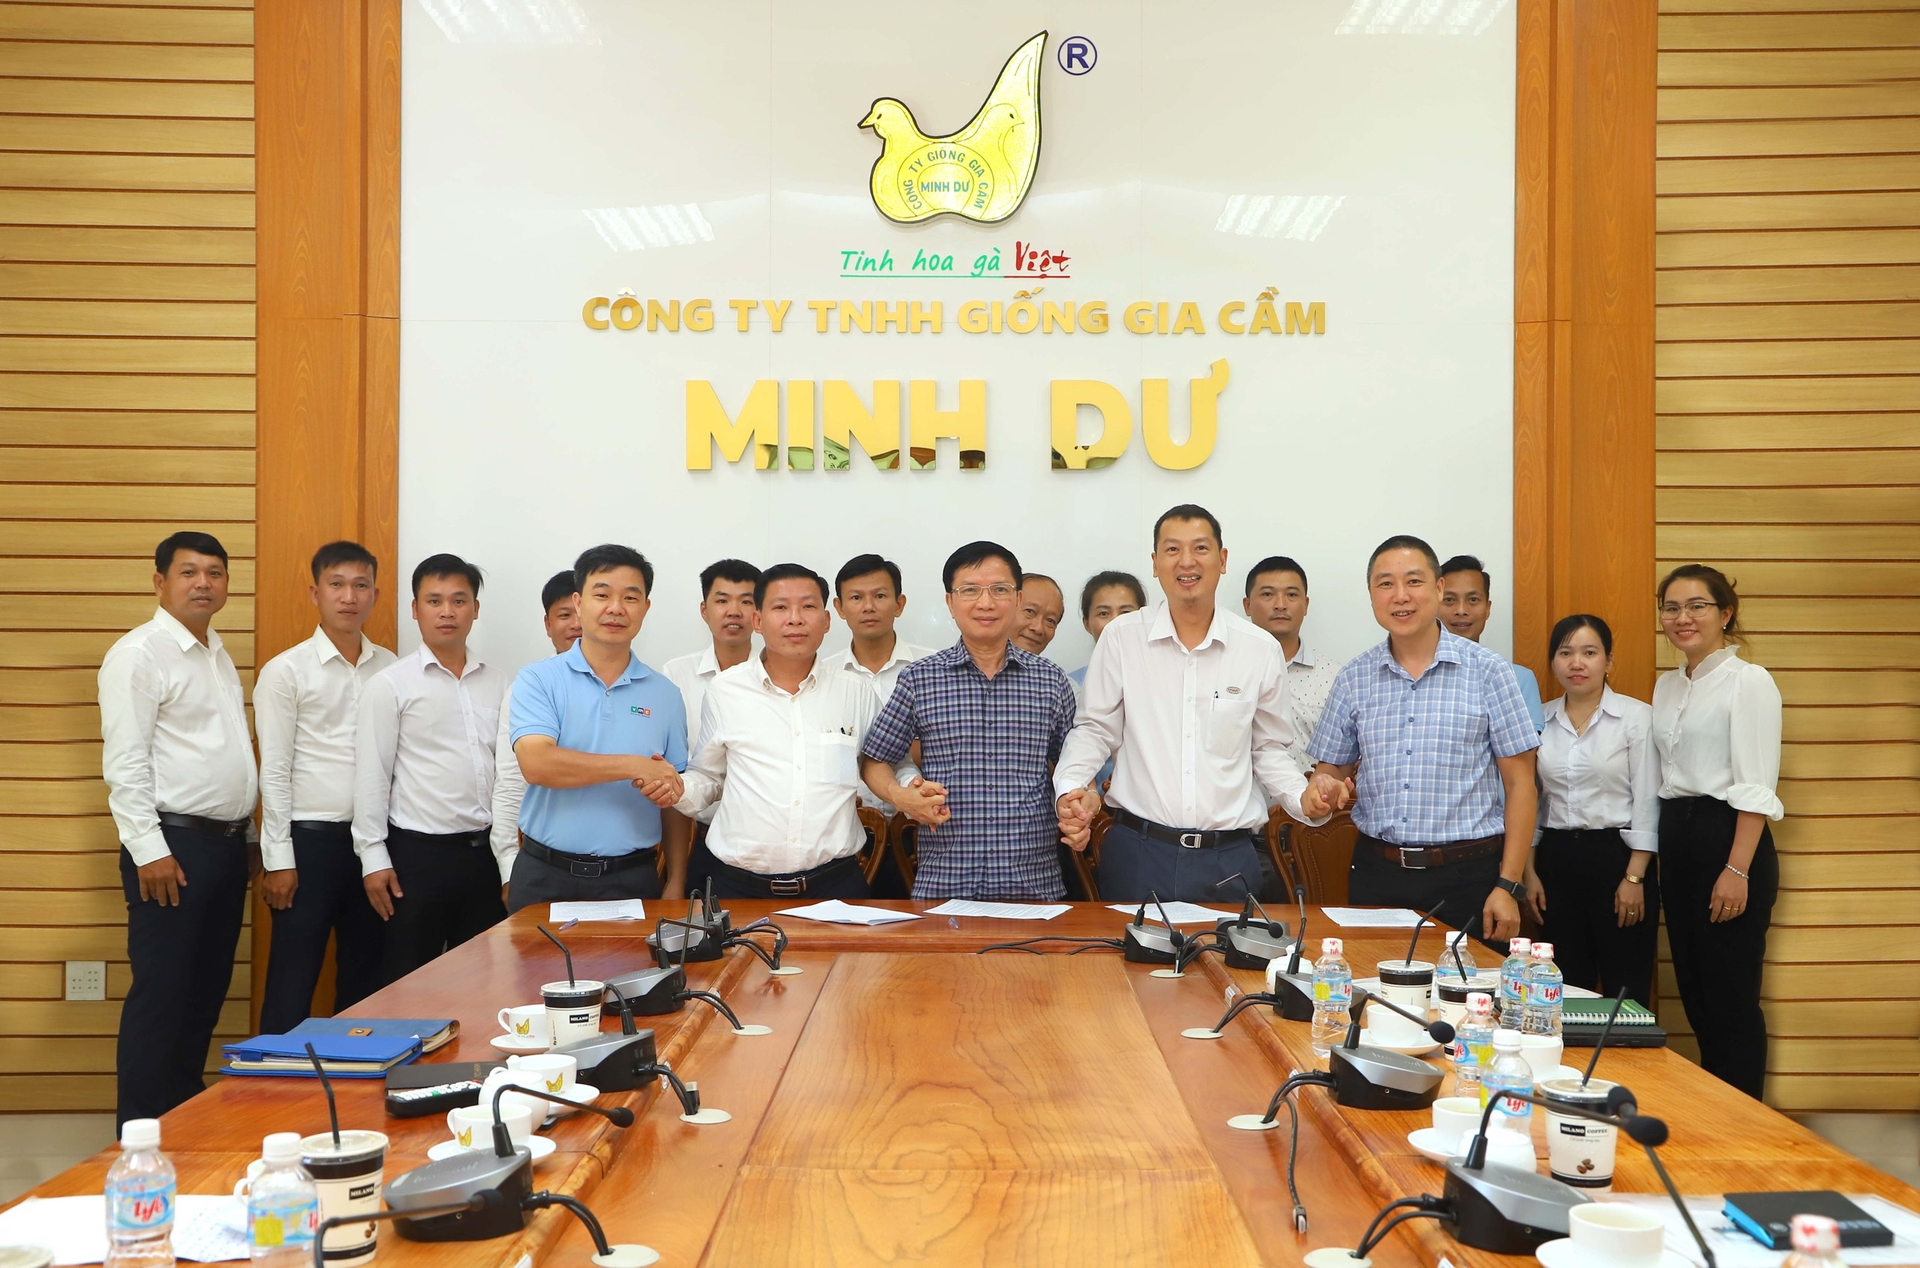 Ông Nguyễn Thanh Sơn, Chủ tịch Hiệp hội Chăn nuôi gia cầm Việt Nam (áo kẻ giữa) cùng các doanh nghiệp, trong đó có VMC Việt Nam ký hợp tác chiến lược.